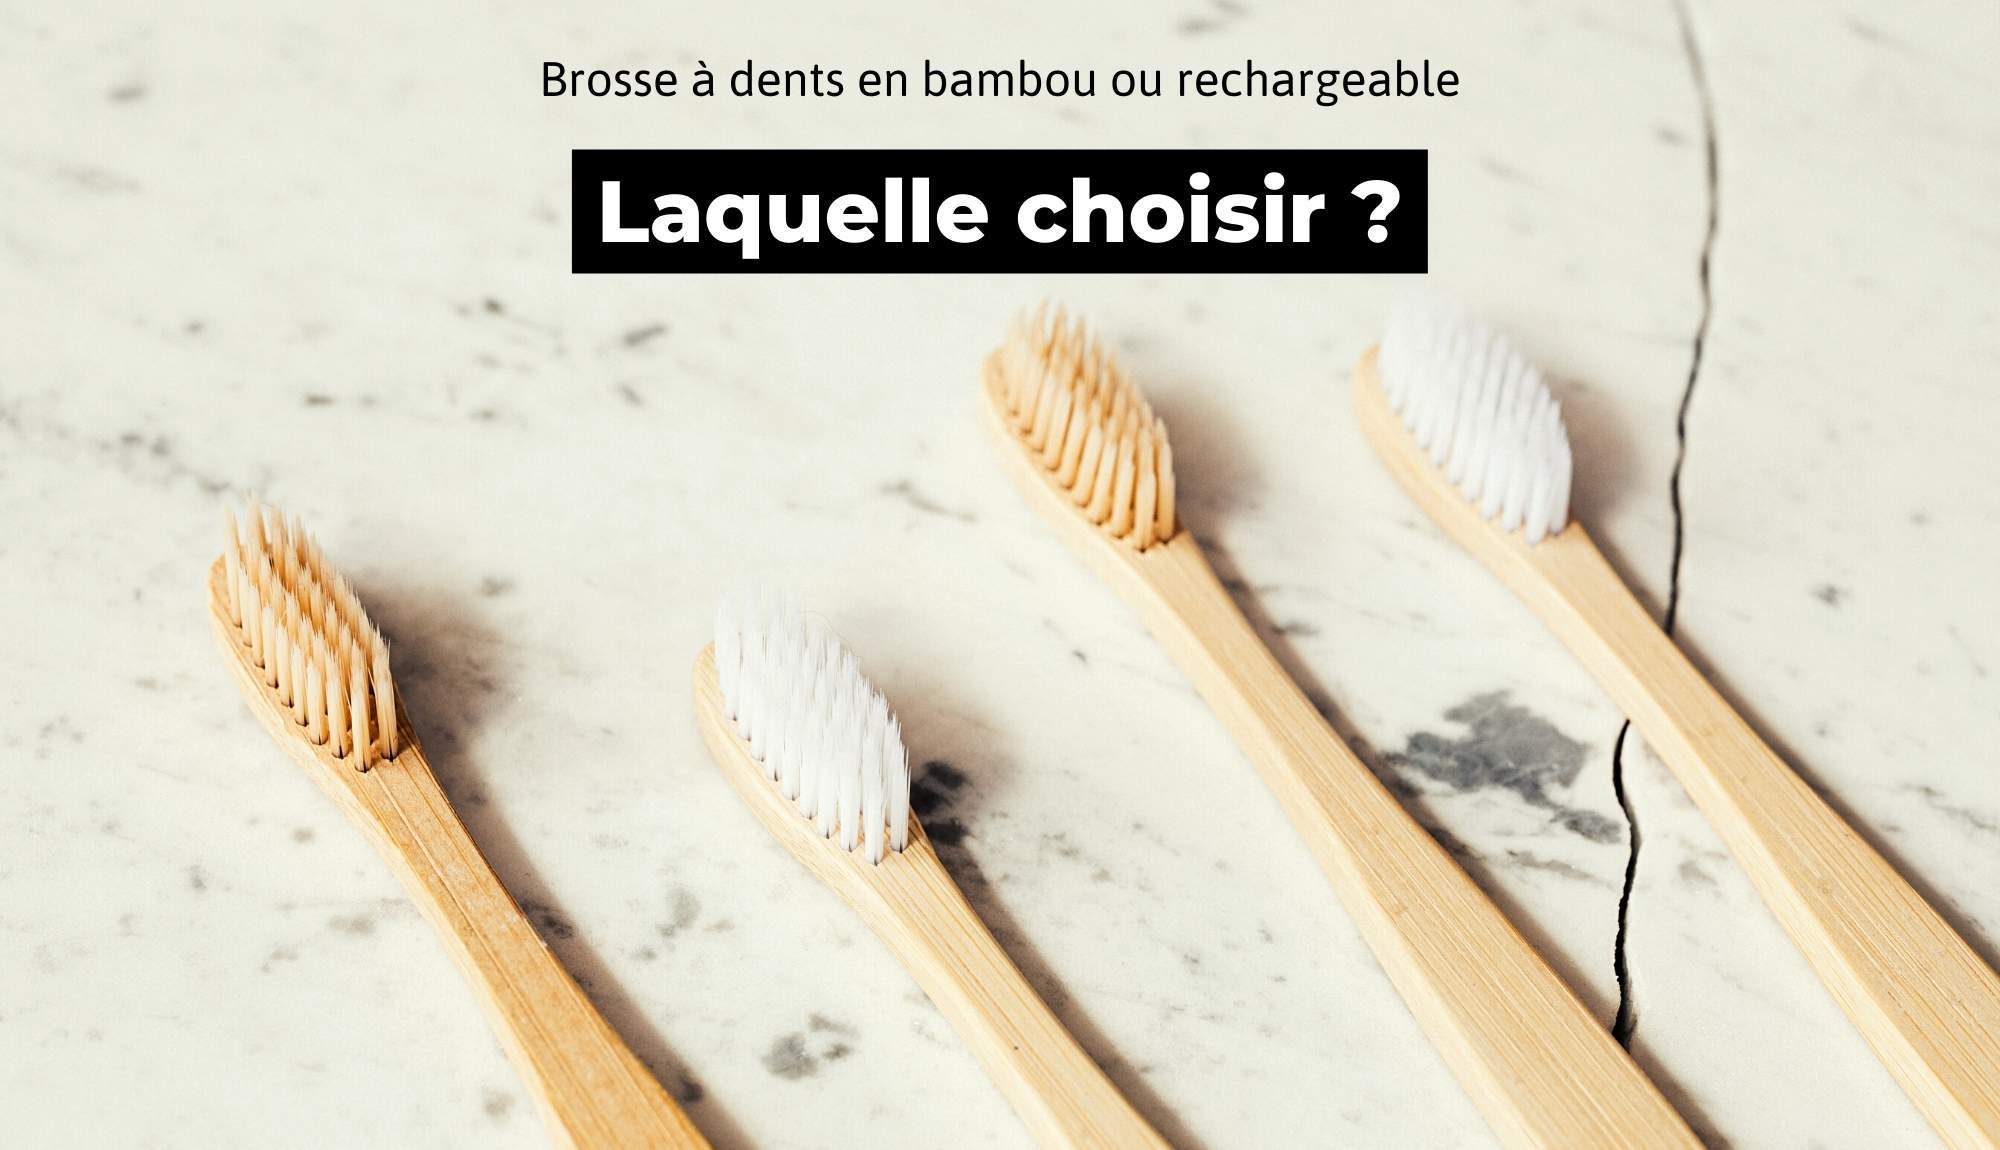 Brosse à dents en bambou ou rechargeable : Quelle est la meilleure alternative écologique ? Trust Society